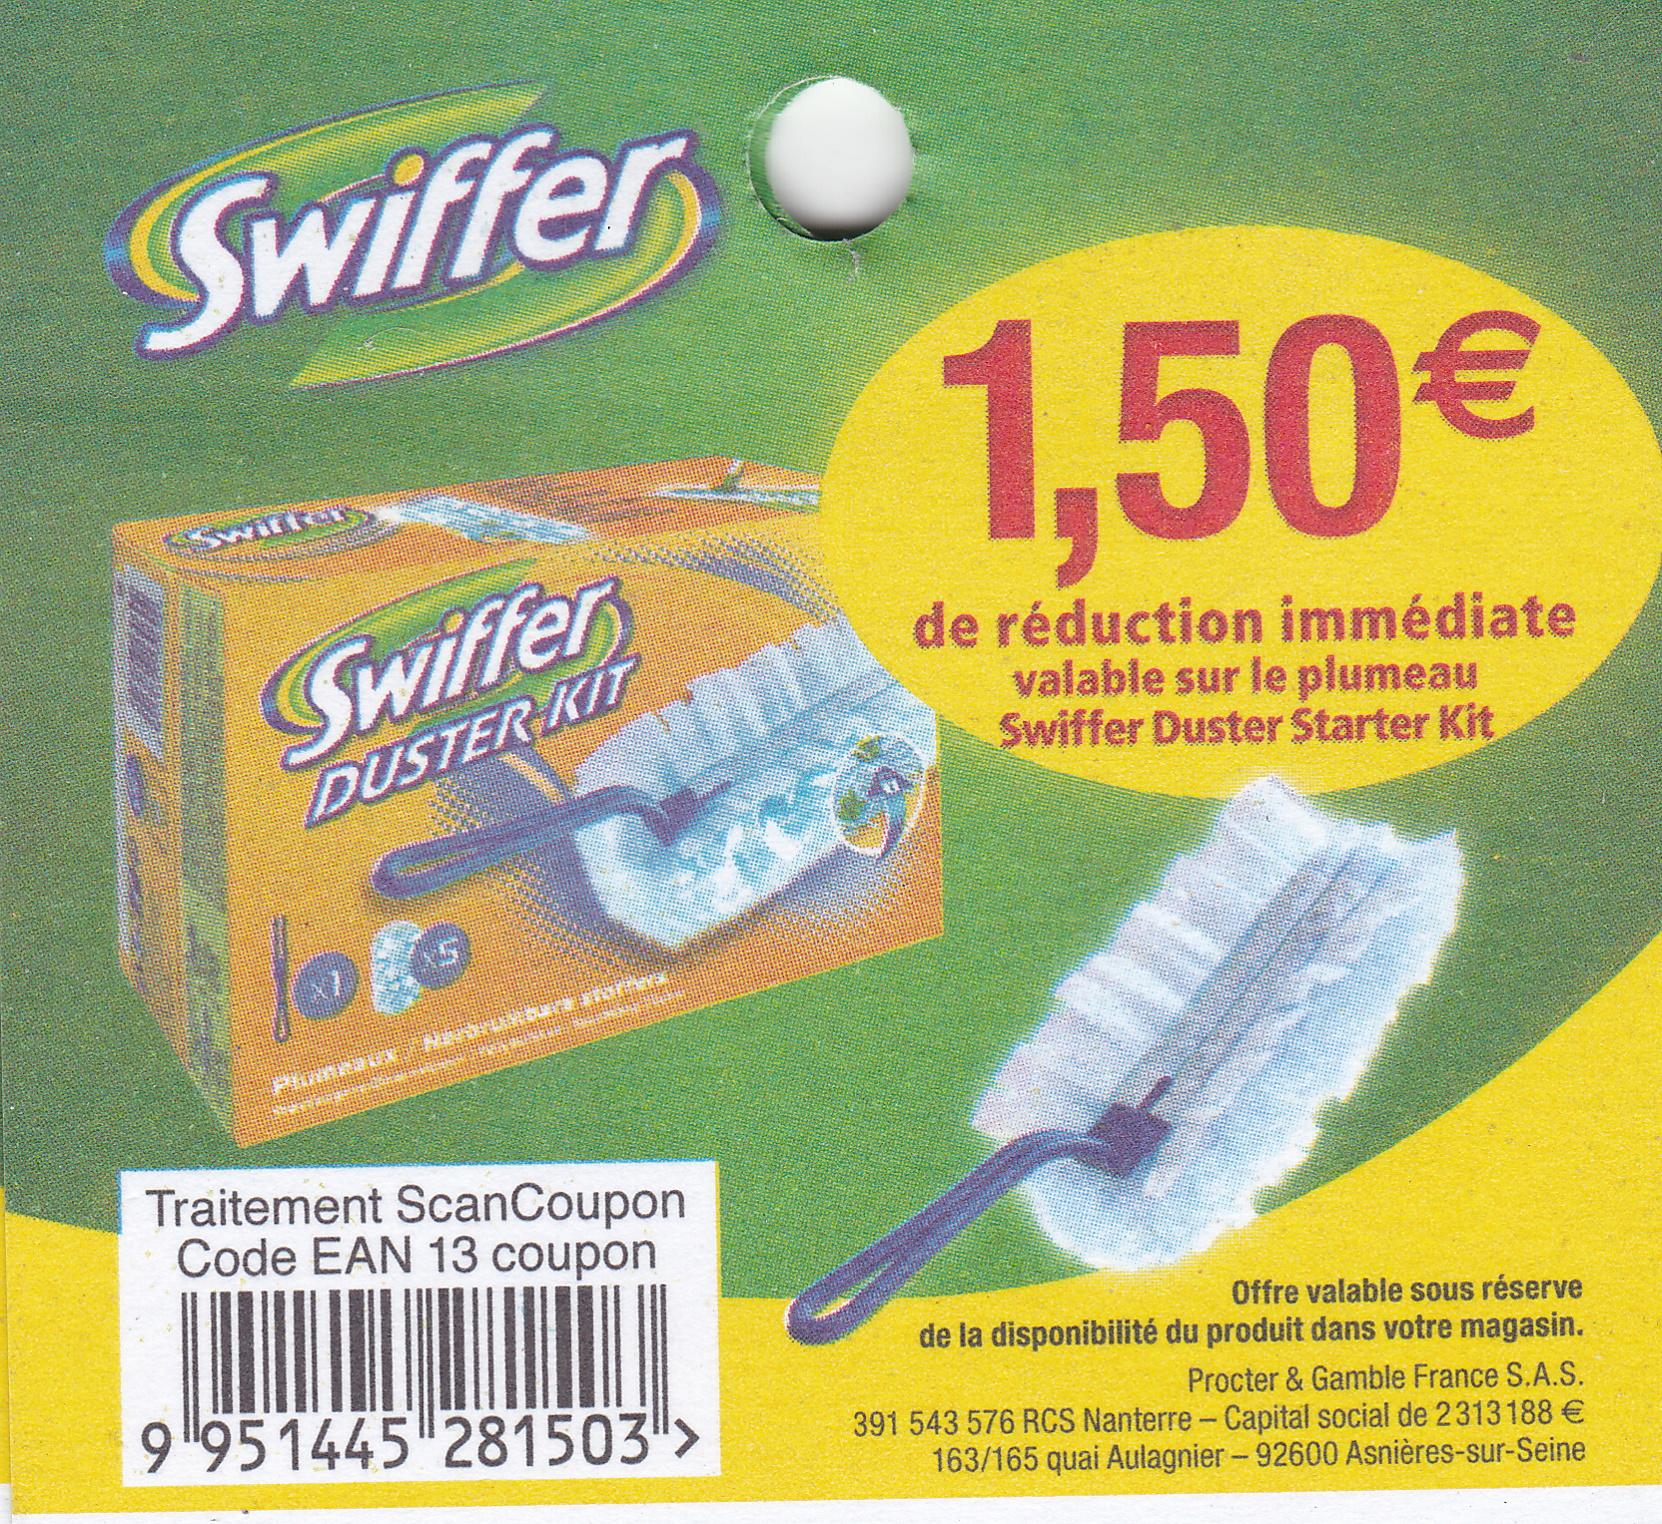 swiffer-1-5-de-r-duction-jusqu-au-31-03-3000-bon-de-r-duction-en